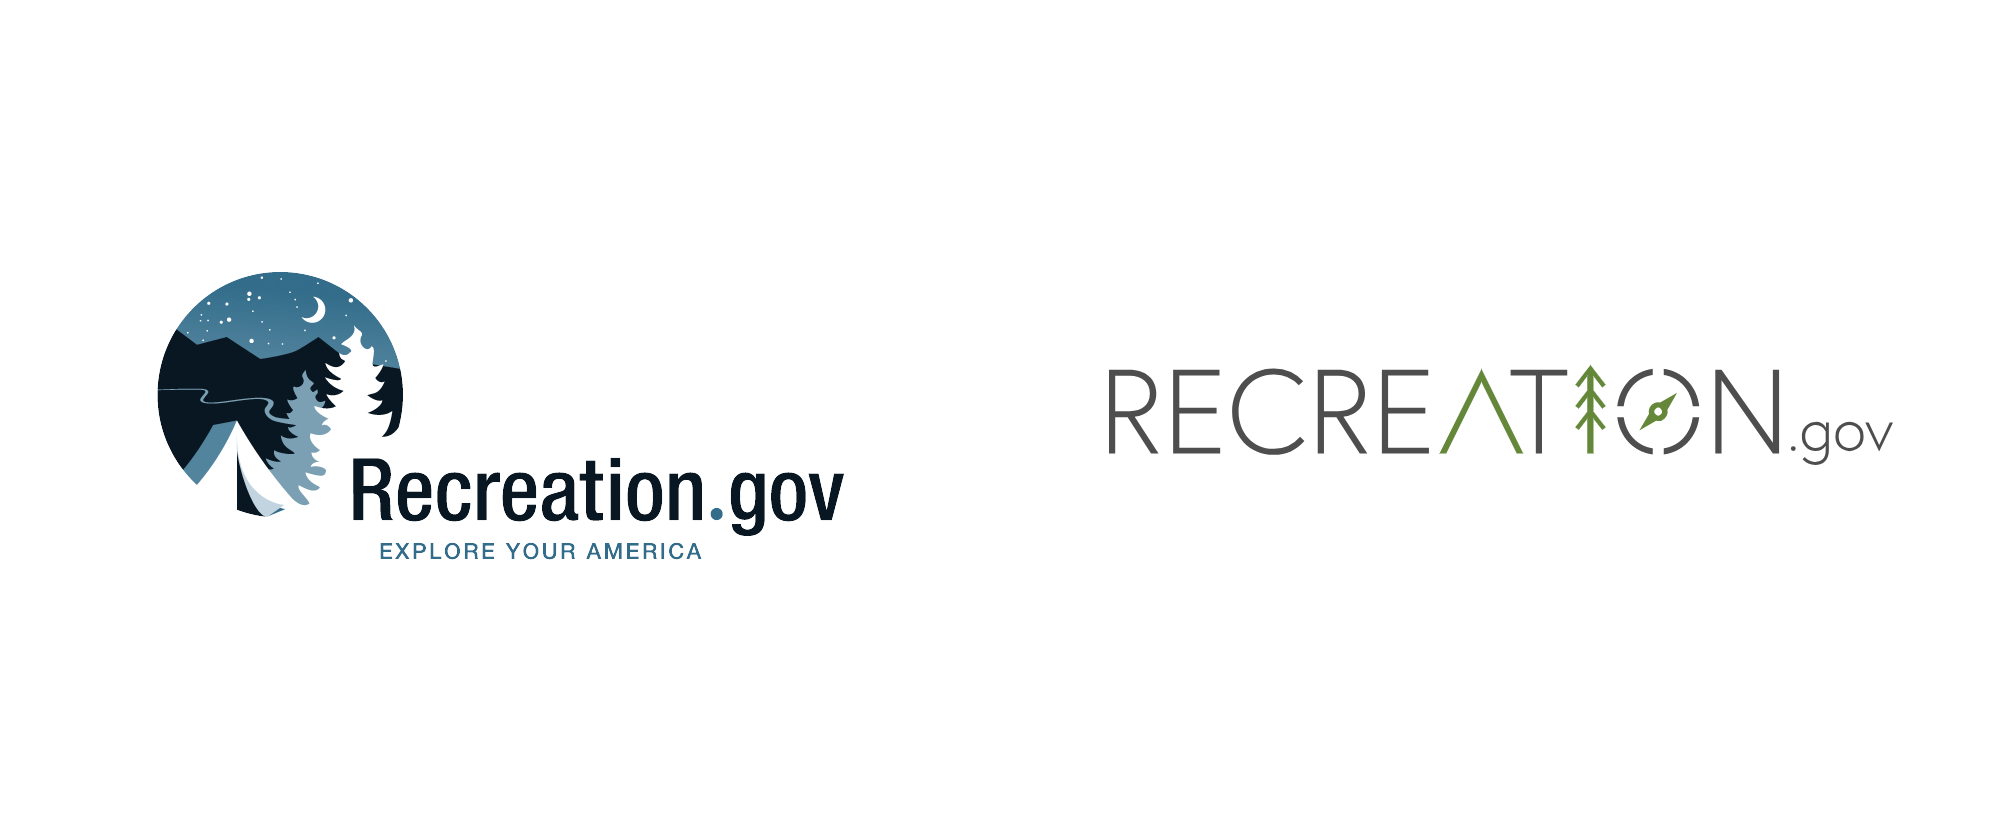 Recreation.gov Logo - Brand New: New Logo for Recreation.gov